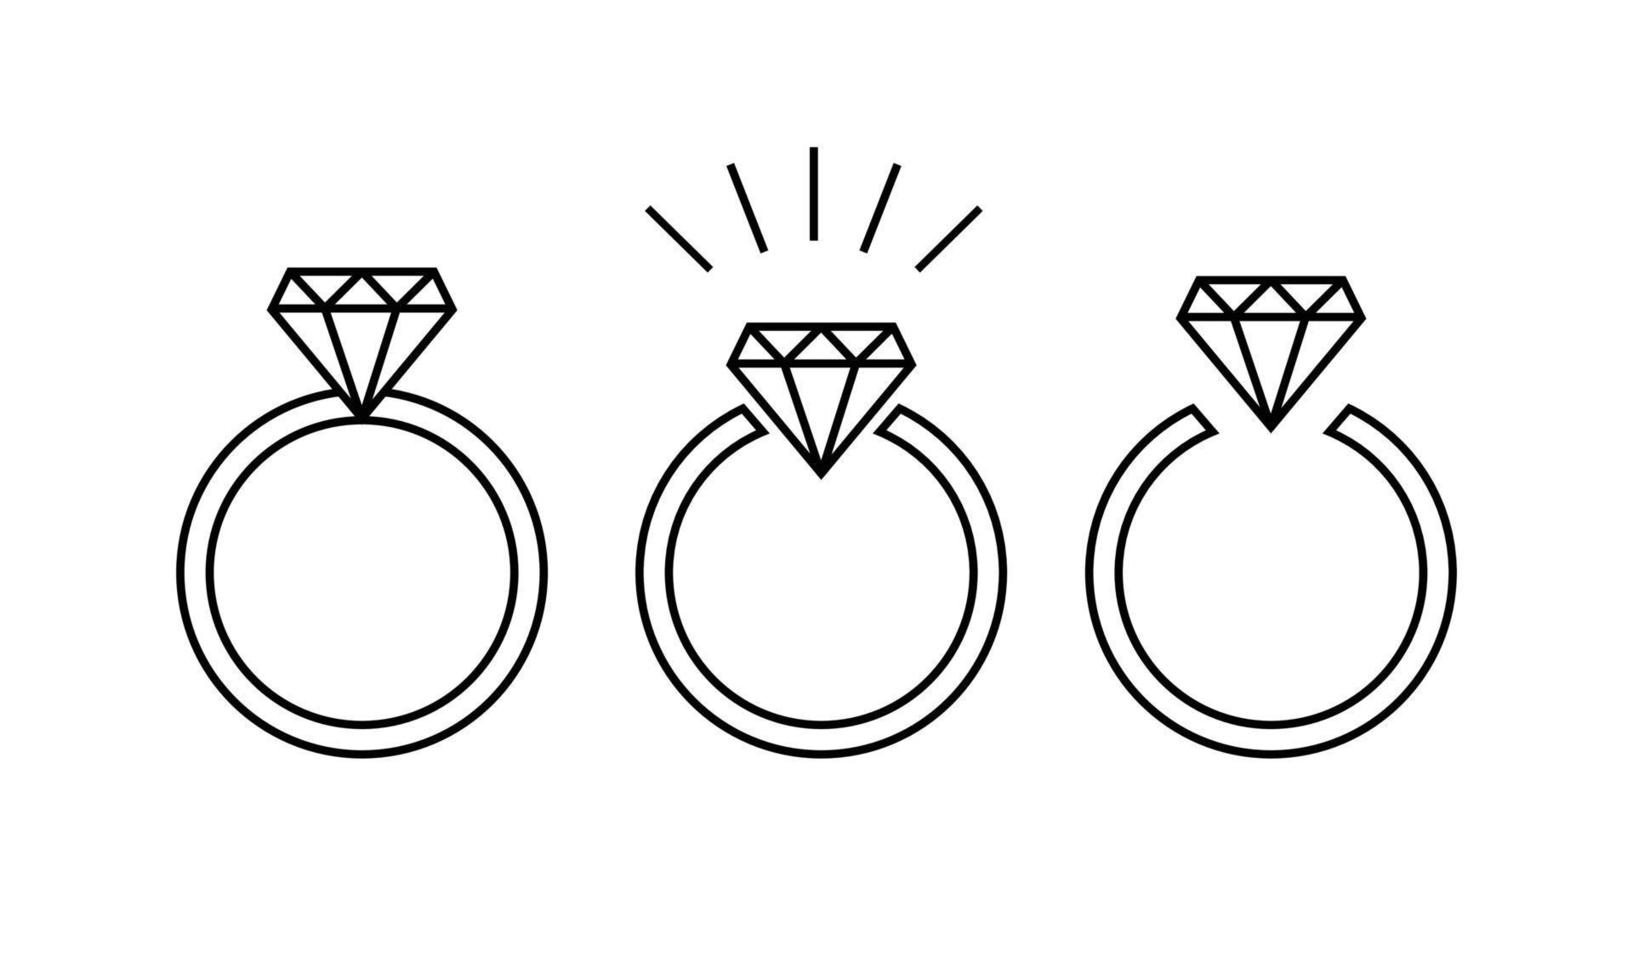 illustrations de bague en diamant vecteur